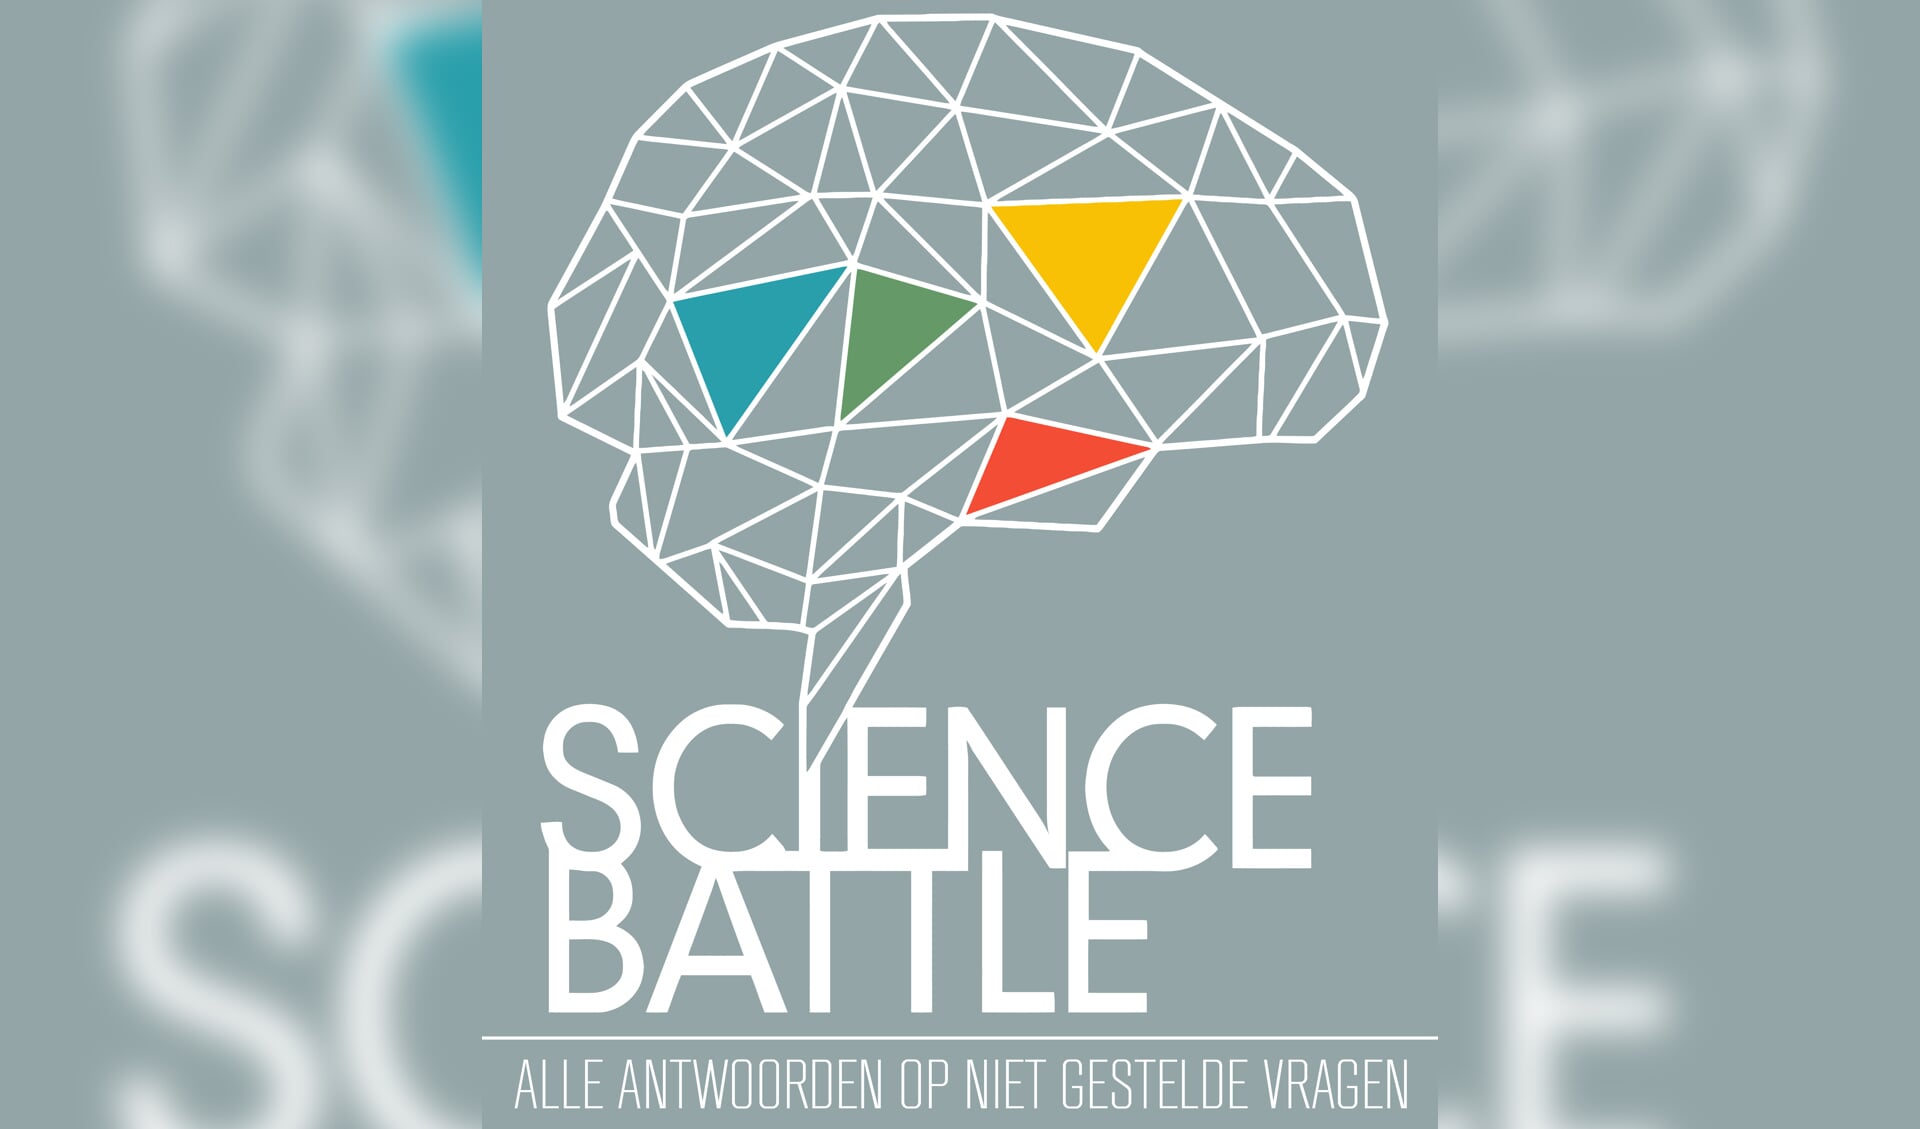 Vier knappe koppen verzorgen zaterdag een heuse 'Science Battle' in De Weijer.